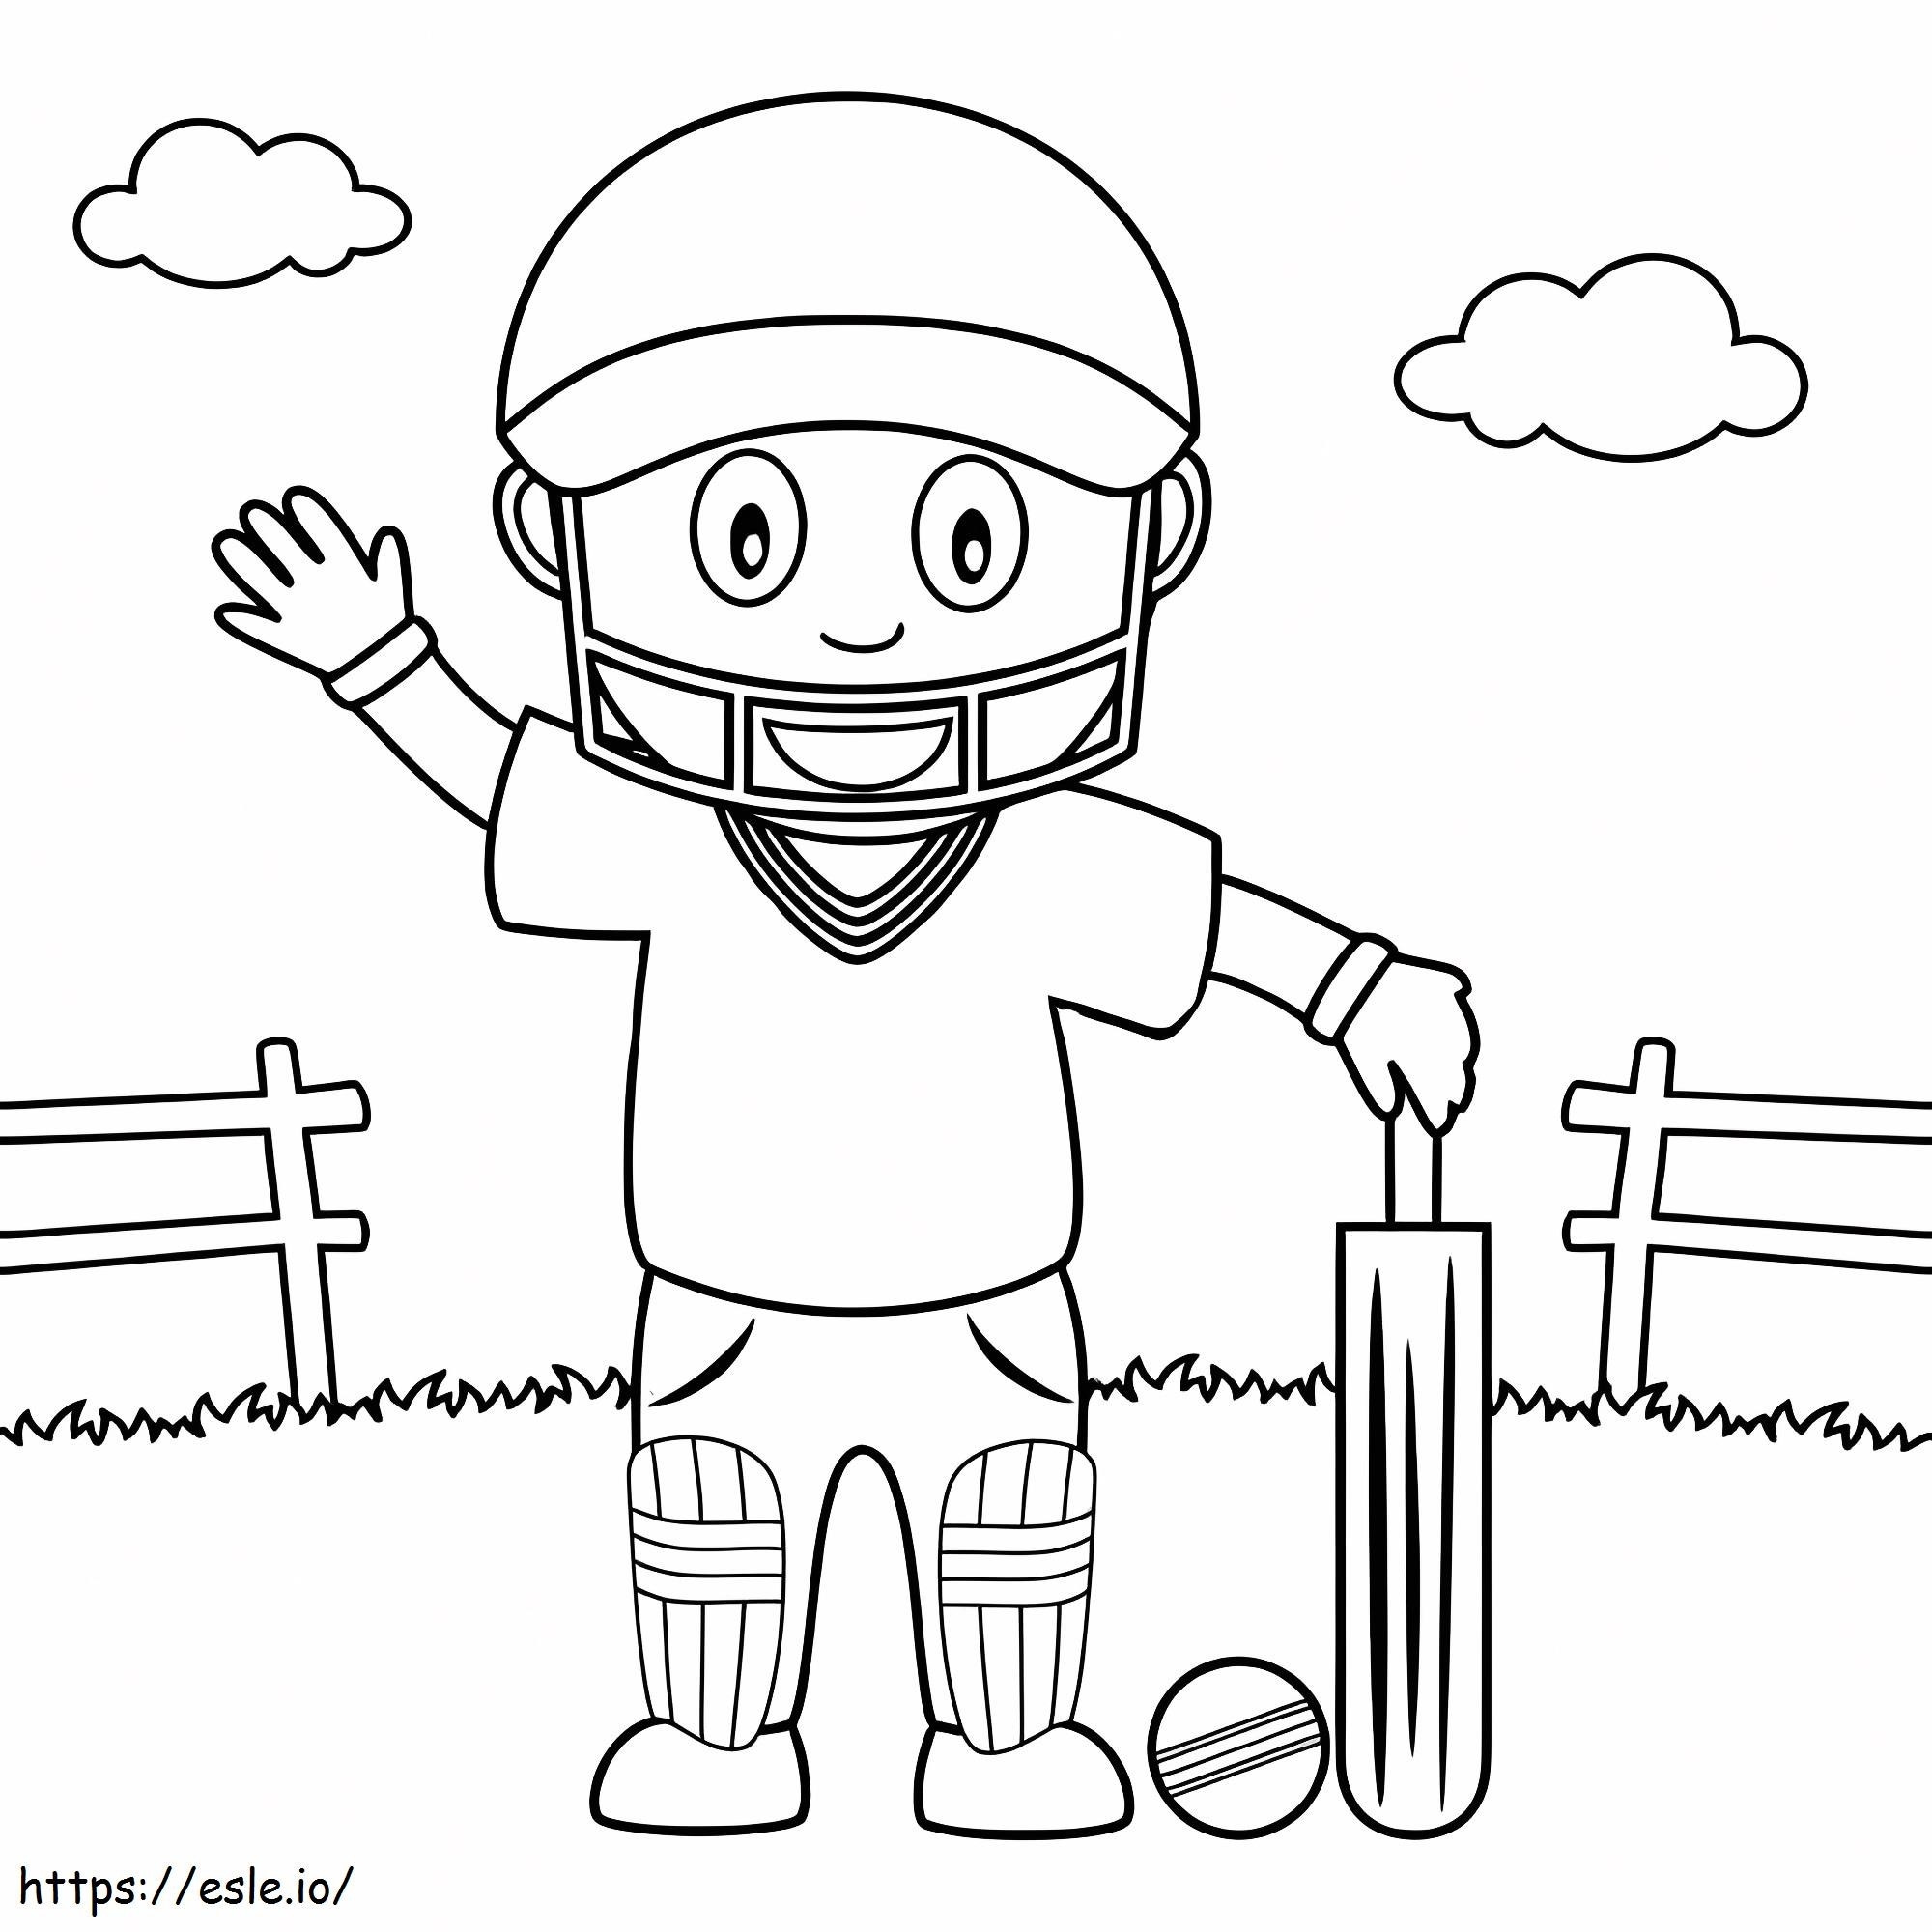 Junge spielt Cricket ausmalbilder